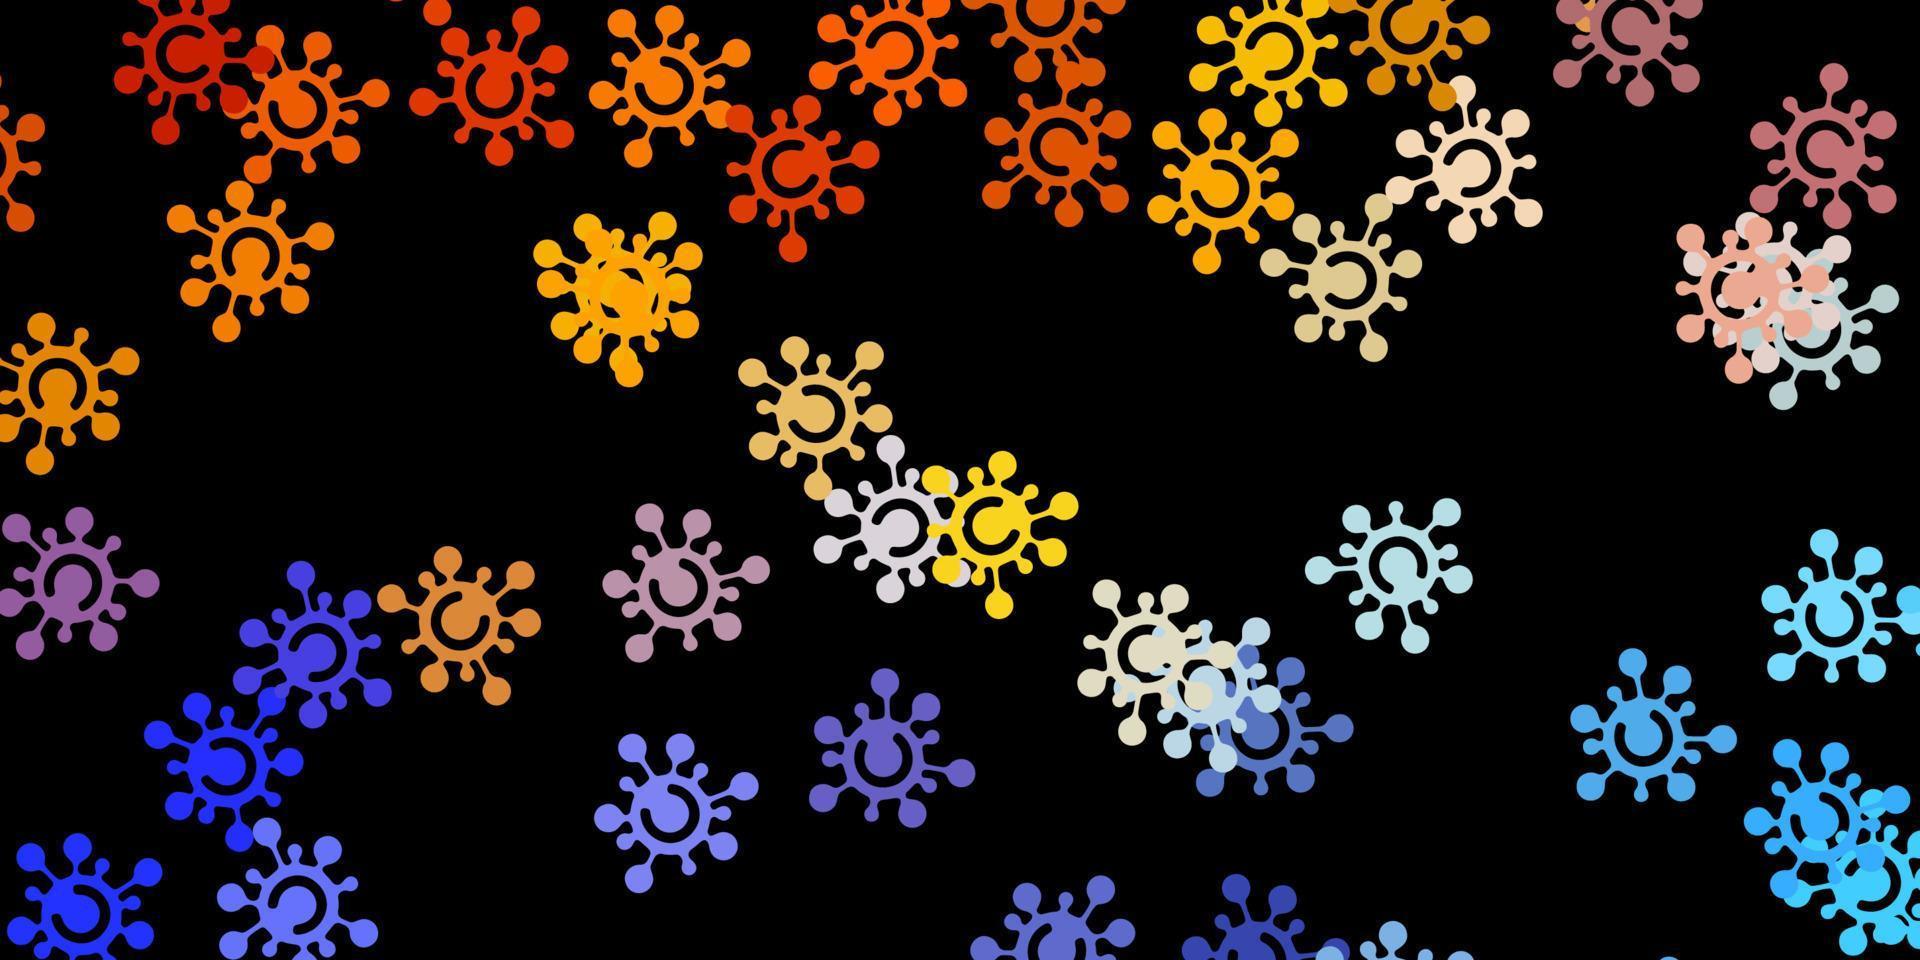 patrón de vector azul oscuro, amarillo con elementos de coronavirus.